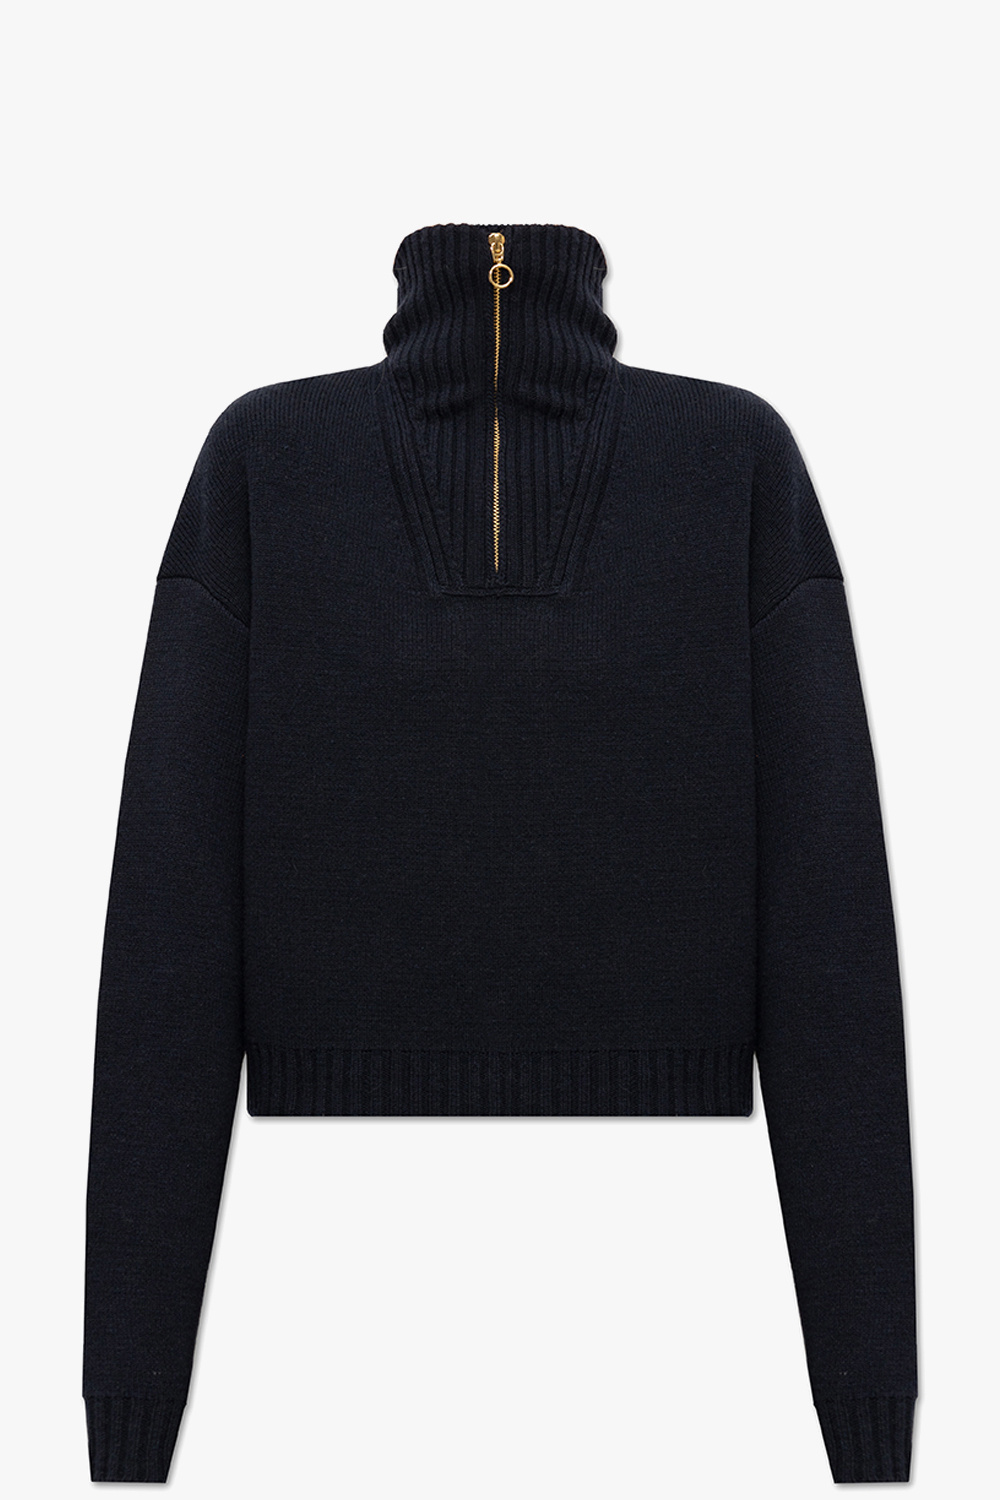 Nanushka ‘Kira’ turtleneck sweater